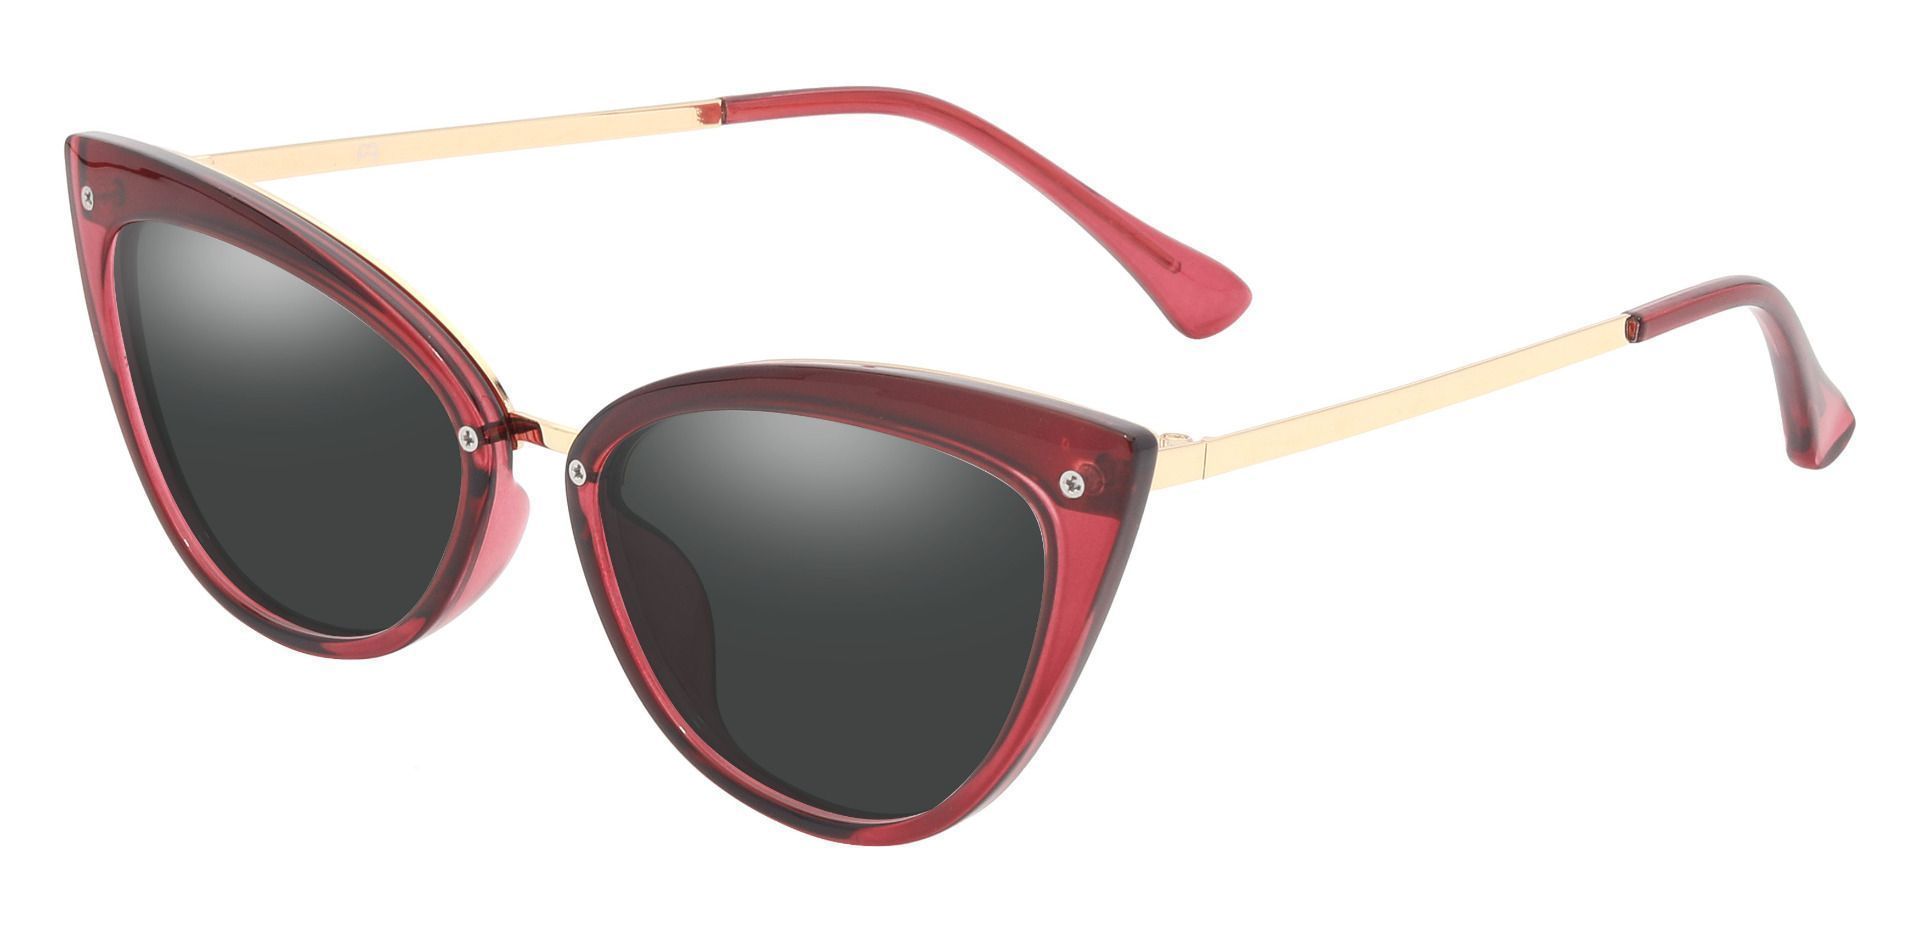 Glenda Cat Eye Prescription Sunglasses - Red Frame With Gray Lenses